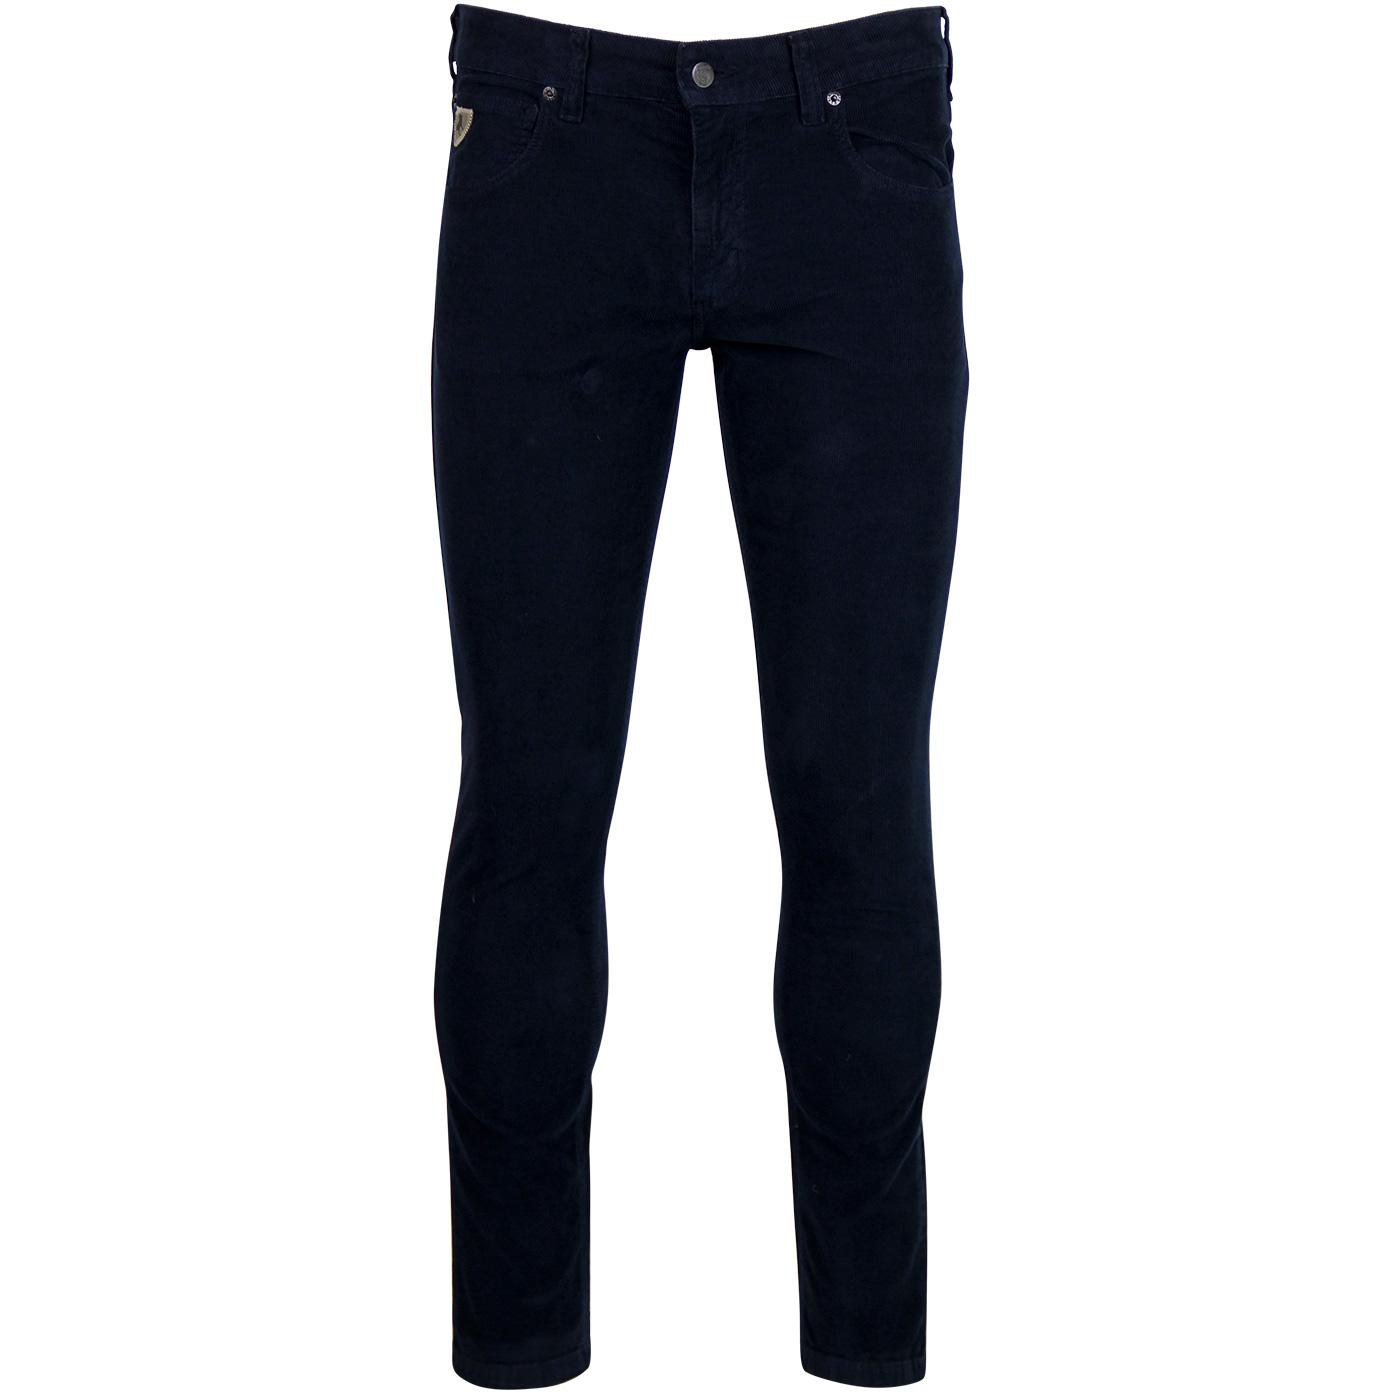 Sky LOIS Retro Mod Skinny Thin Cord Jeans - Navy